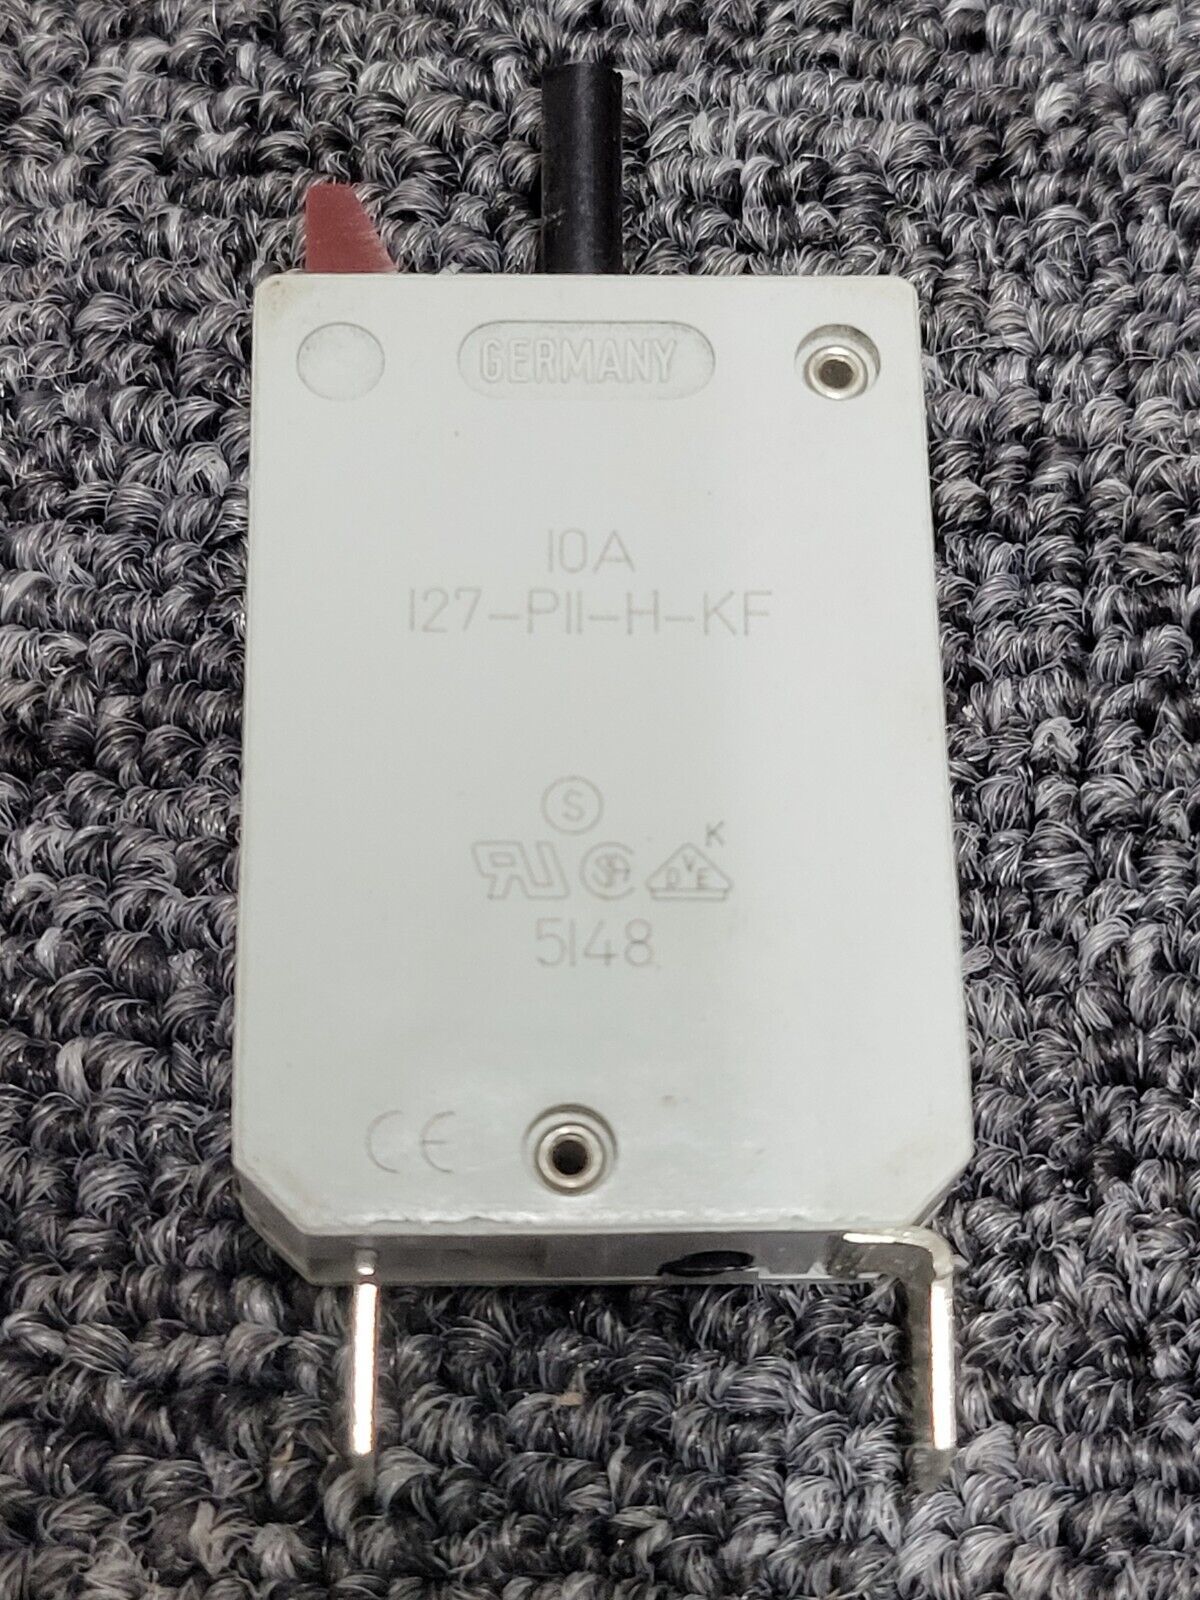 Primary image for E-T-A  Circuit Breaker 10 AMP 127-P11-H-KF 250v 28vdc